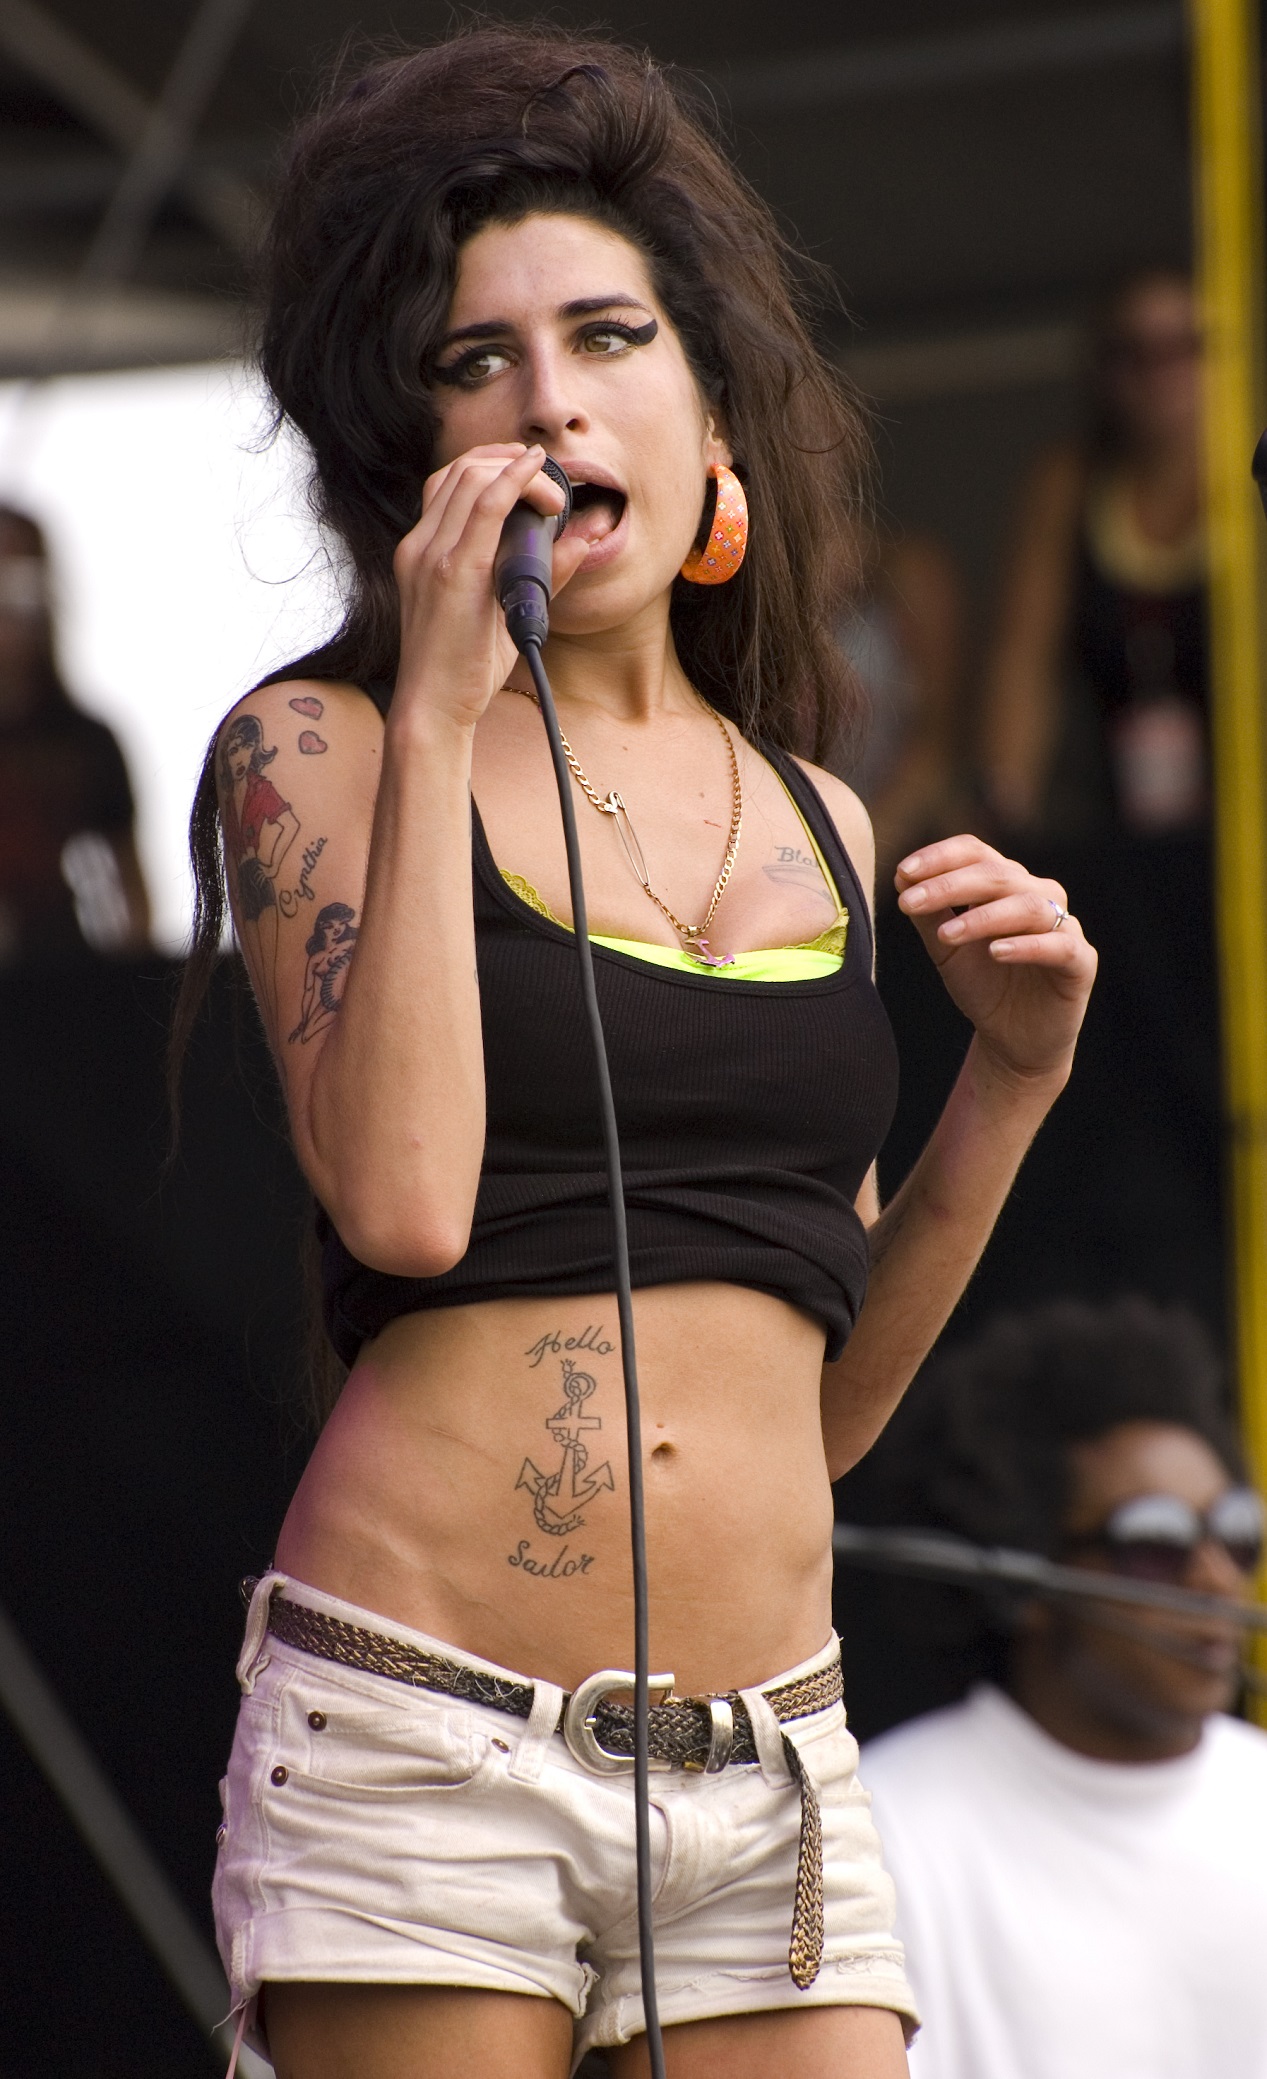 La chanteuse Amy Winehouse sur scène en 2007